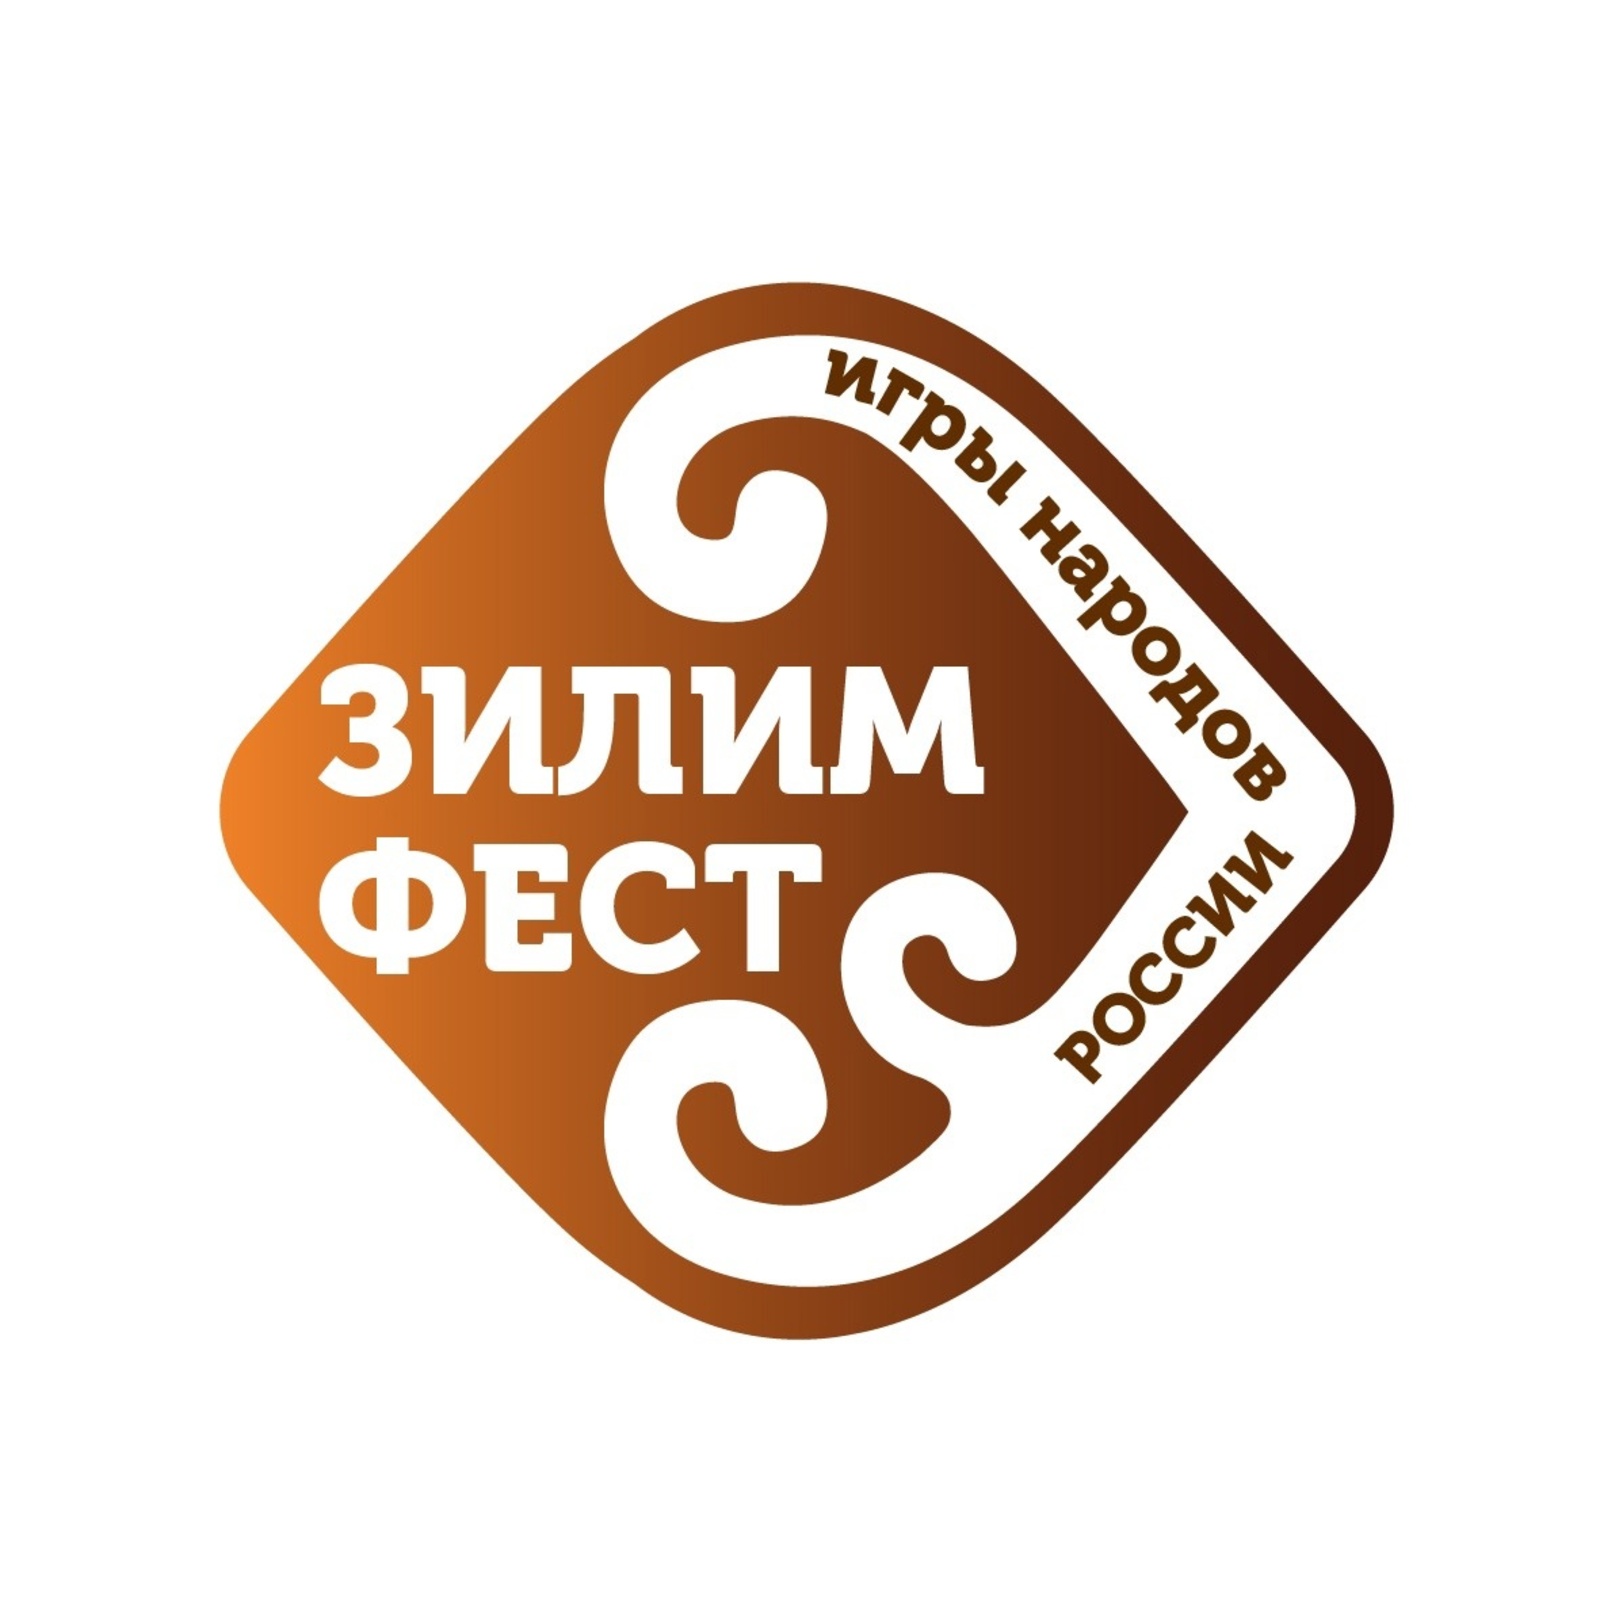 В Гафурийском районе в январе планируют провести масштабное мероприятие - фестиваль «Зилим фест. Игры народов России»